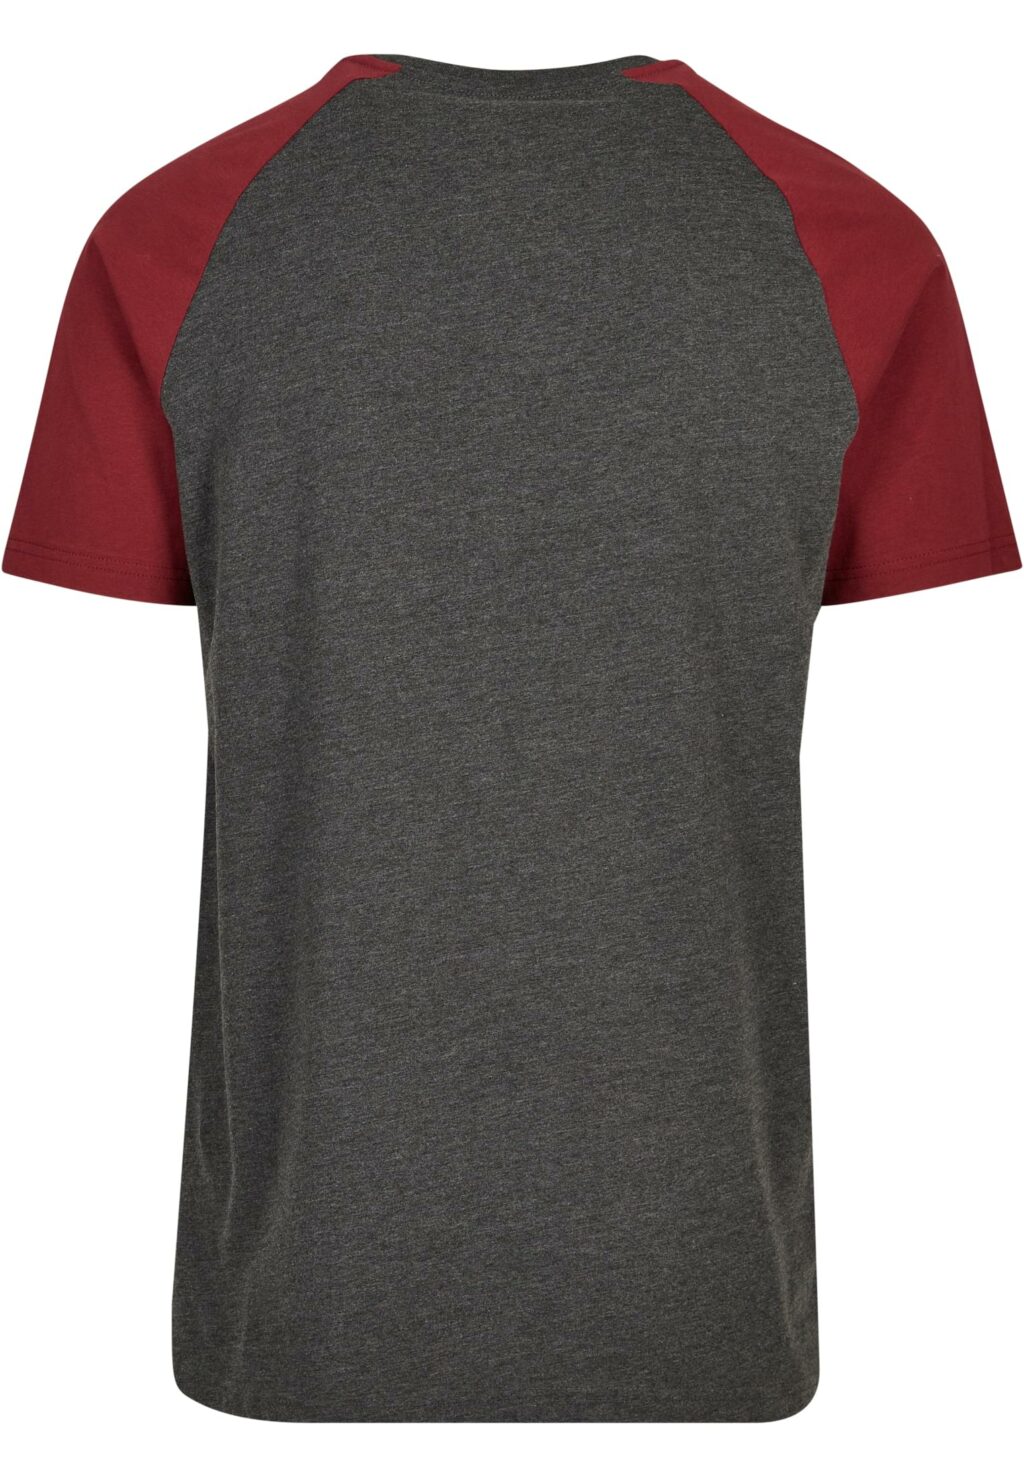 Rocawear T-Shirt burgundy RWTS050